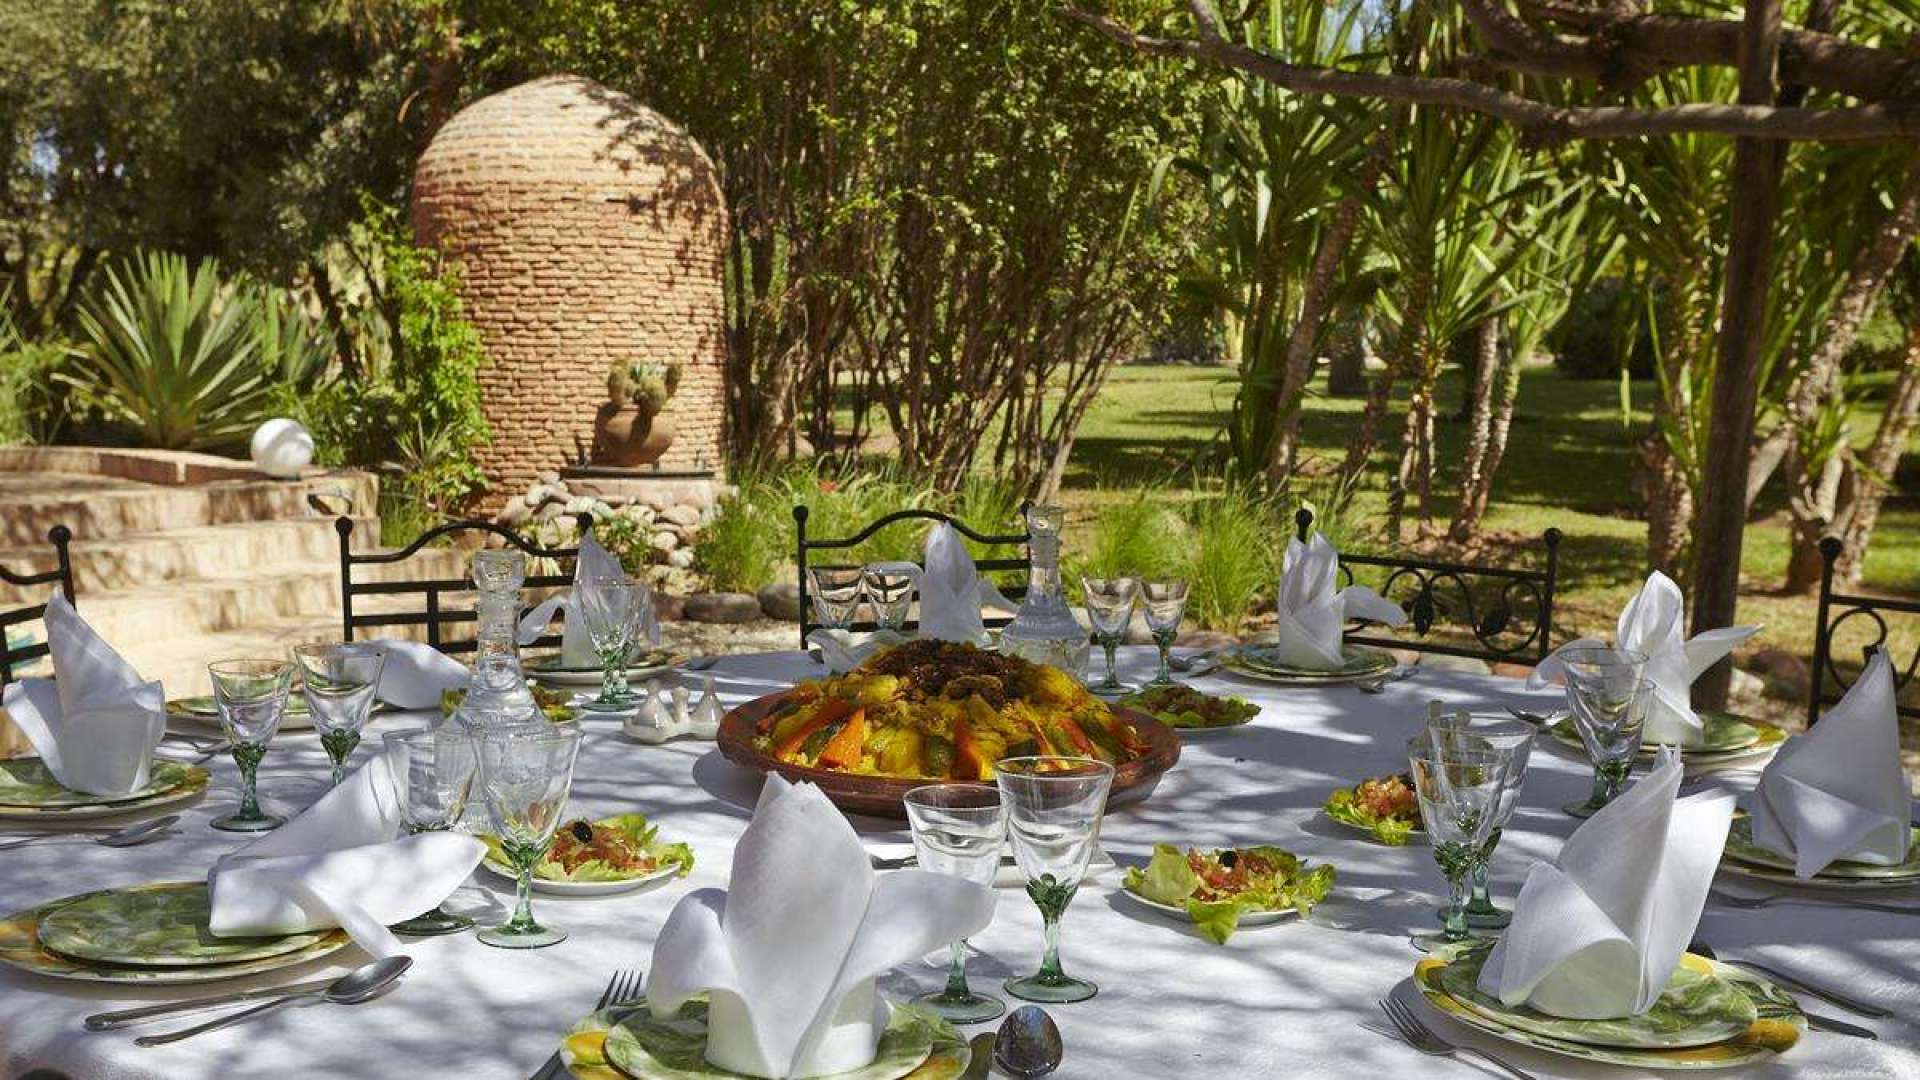 Location de vacances,Villa,Villa 10 chambres avec services hôteliers dans la Palmeraie,Marrakech,Palmeraie